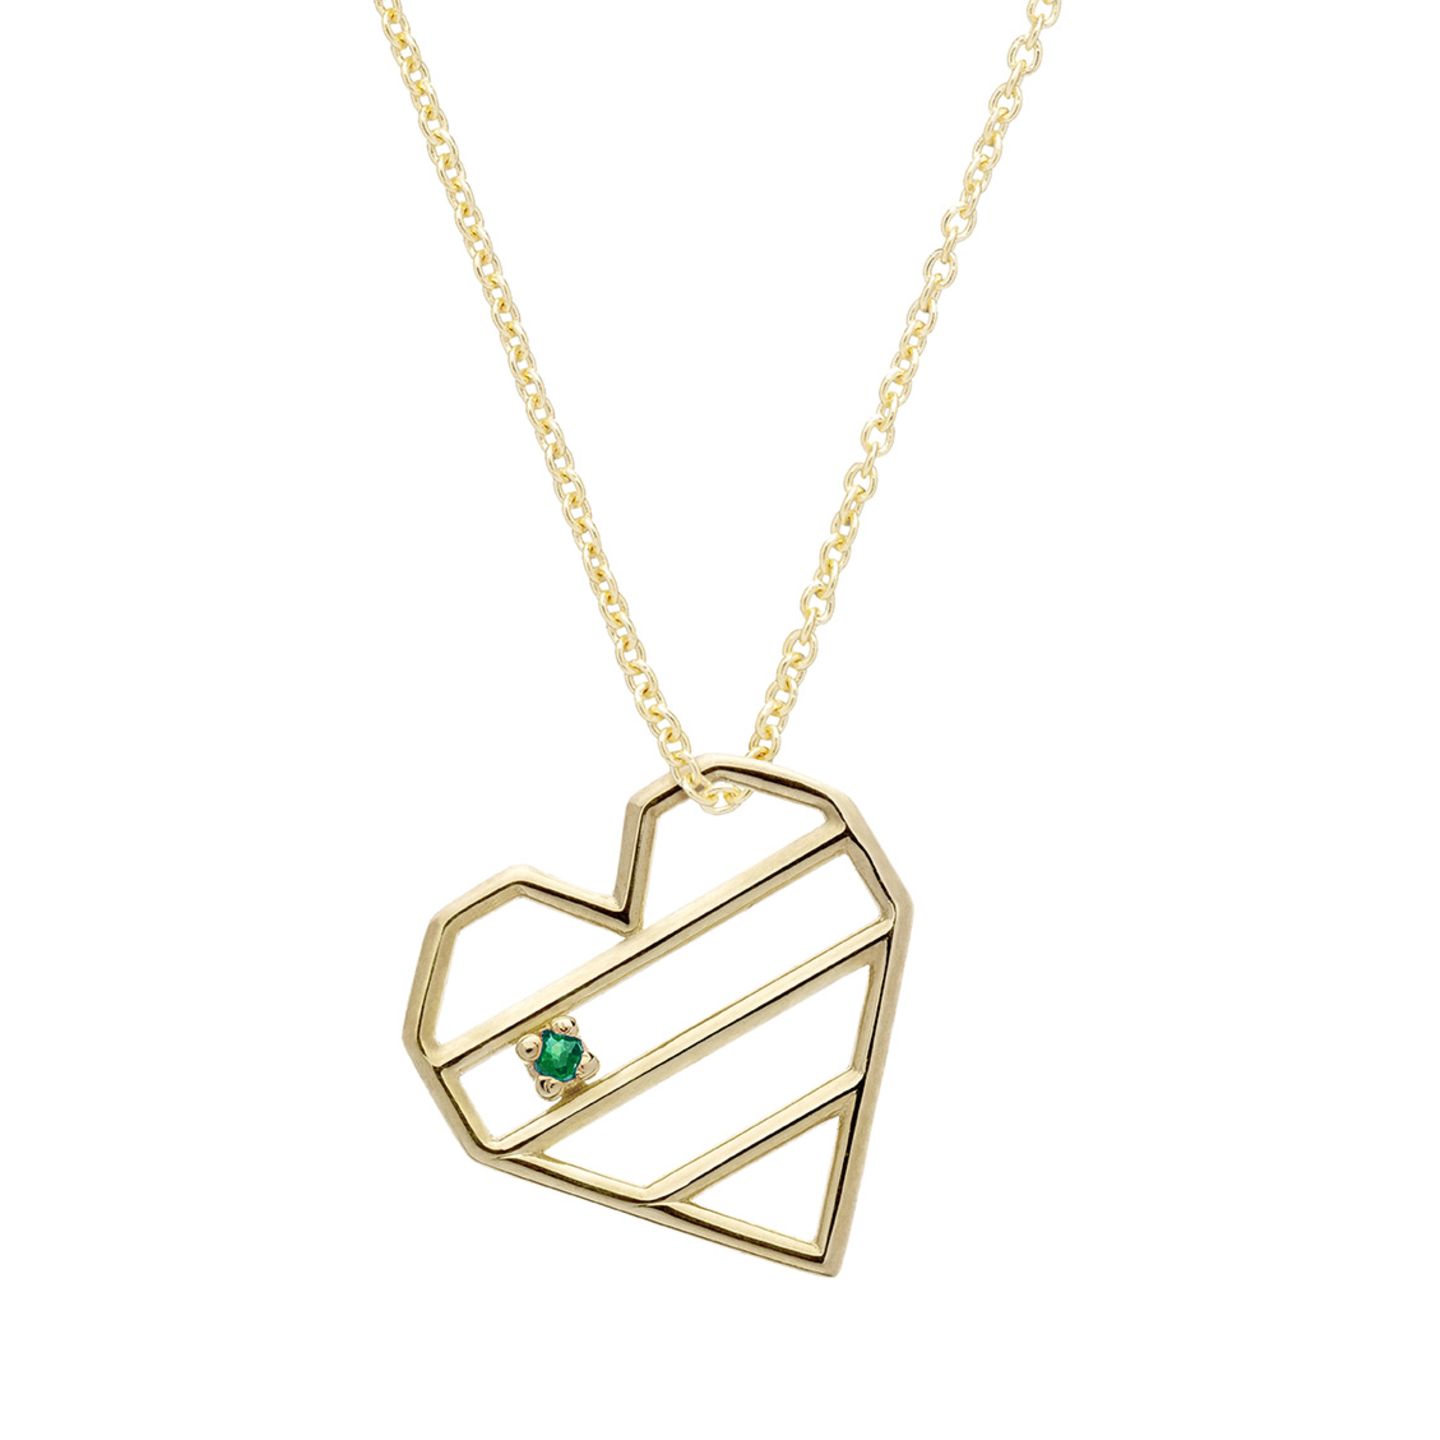 Supersüß und trotzdem nicht kitschig: Die Necklace mit Herzanhänger hat uns den Kopf verdreht. Besonders zauberhaft finden wir den kleine Smaragd. Das perfekte Geschenk, um einer geliebten Person eine Freude zu machen oder um uns selbst zu belohnen.   Corazon Rayado Esmeralda Necklace von ALIITA für 300€